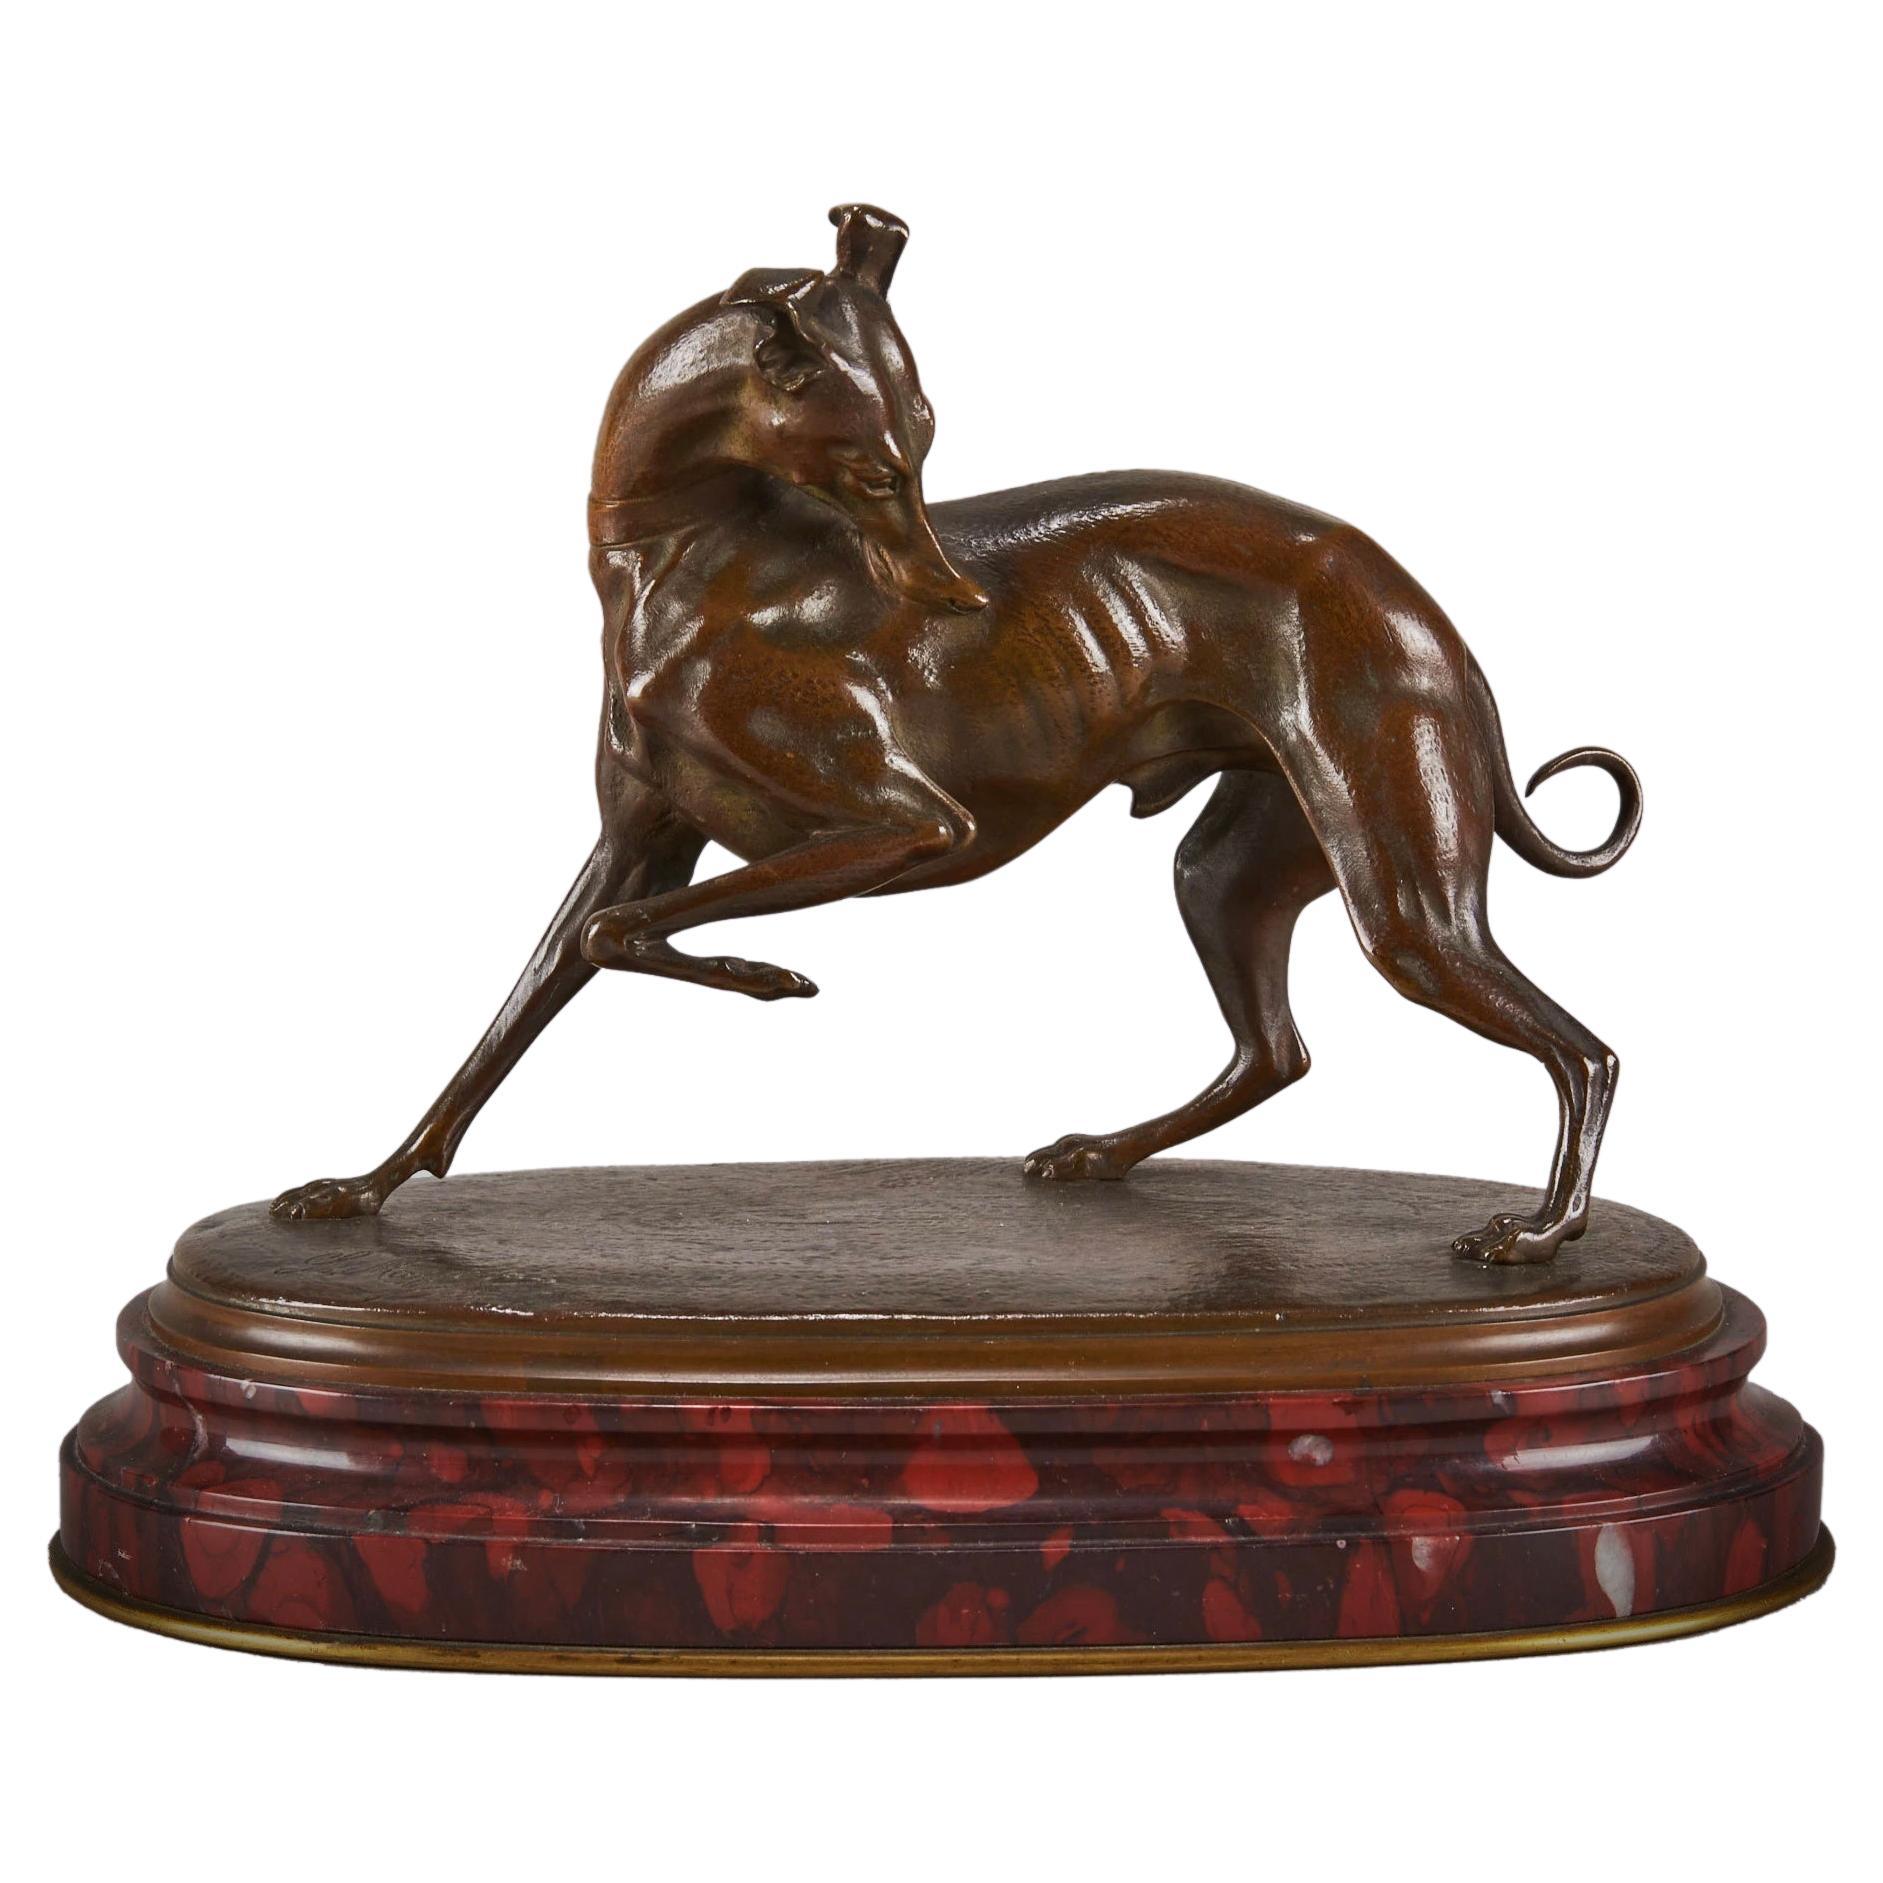 Bronze animalier français de la fin du XIXe siècle intitulé "Turning Whippet" par L Mayer